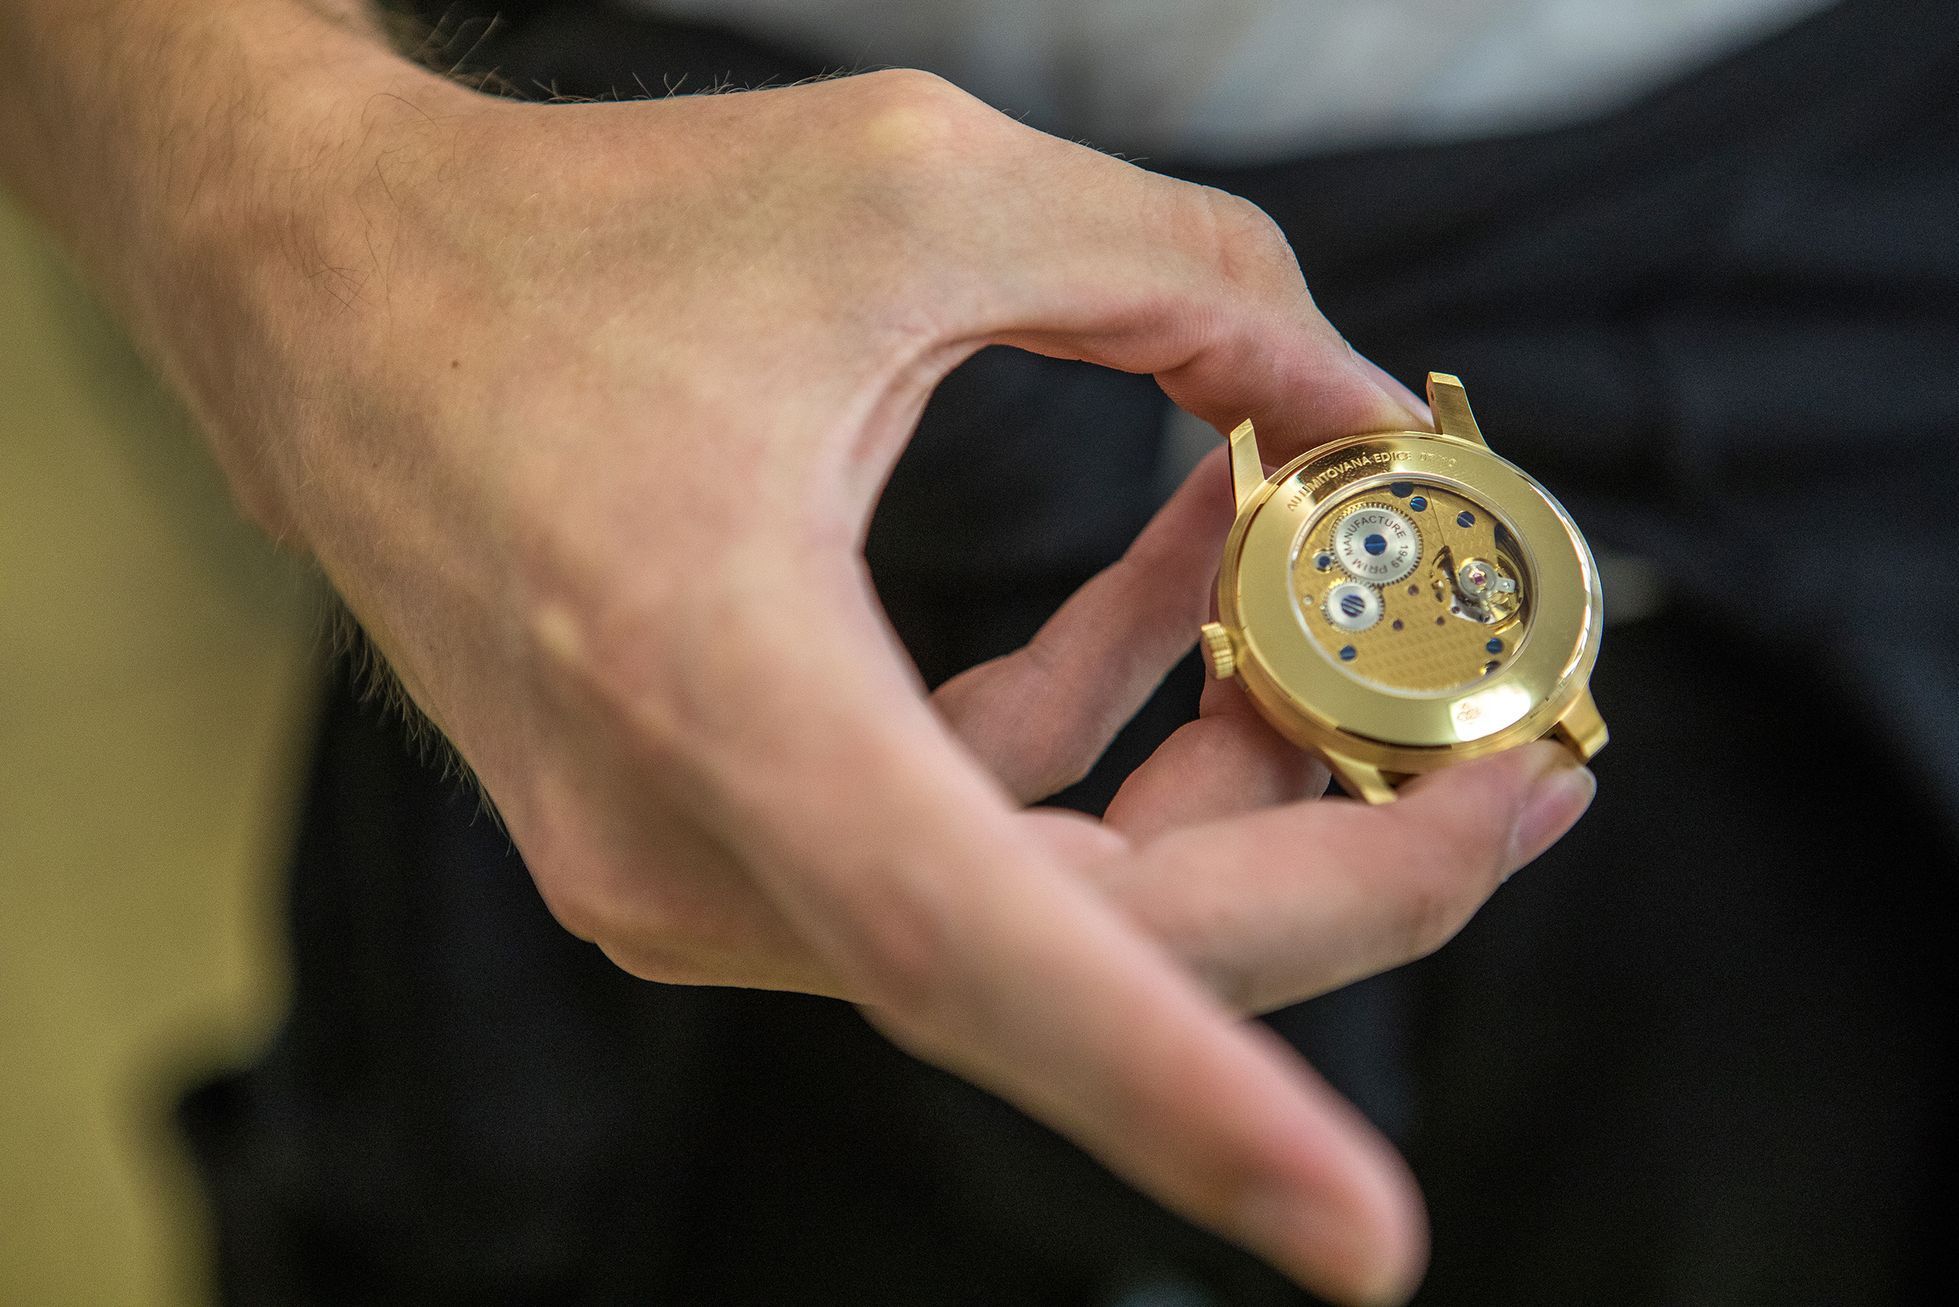 Výroba hodinek Prim v Novém Městě nad Metují